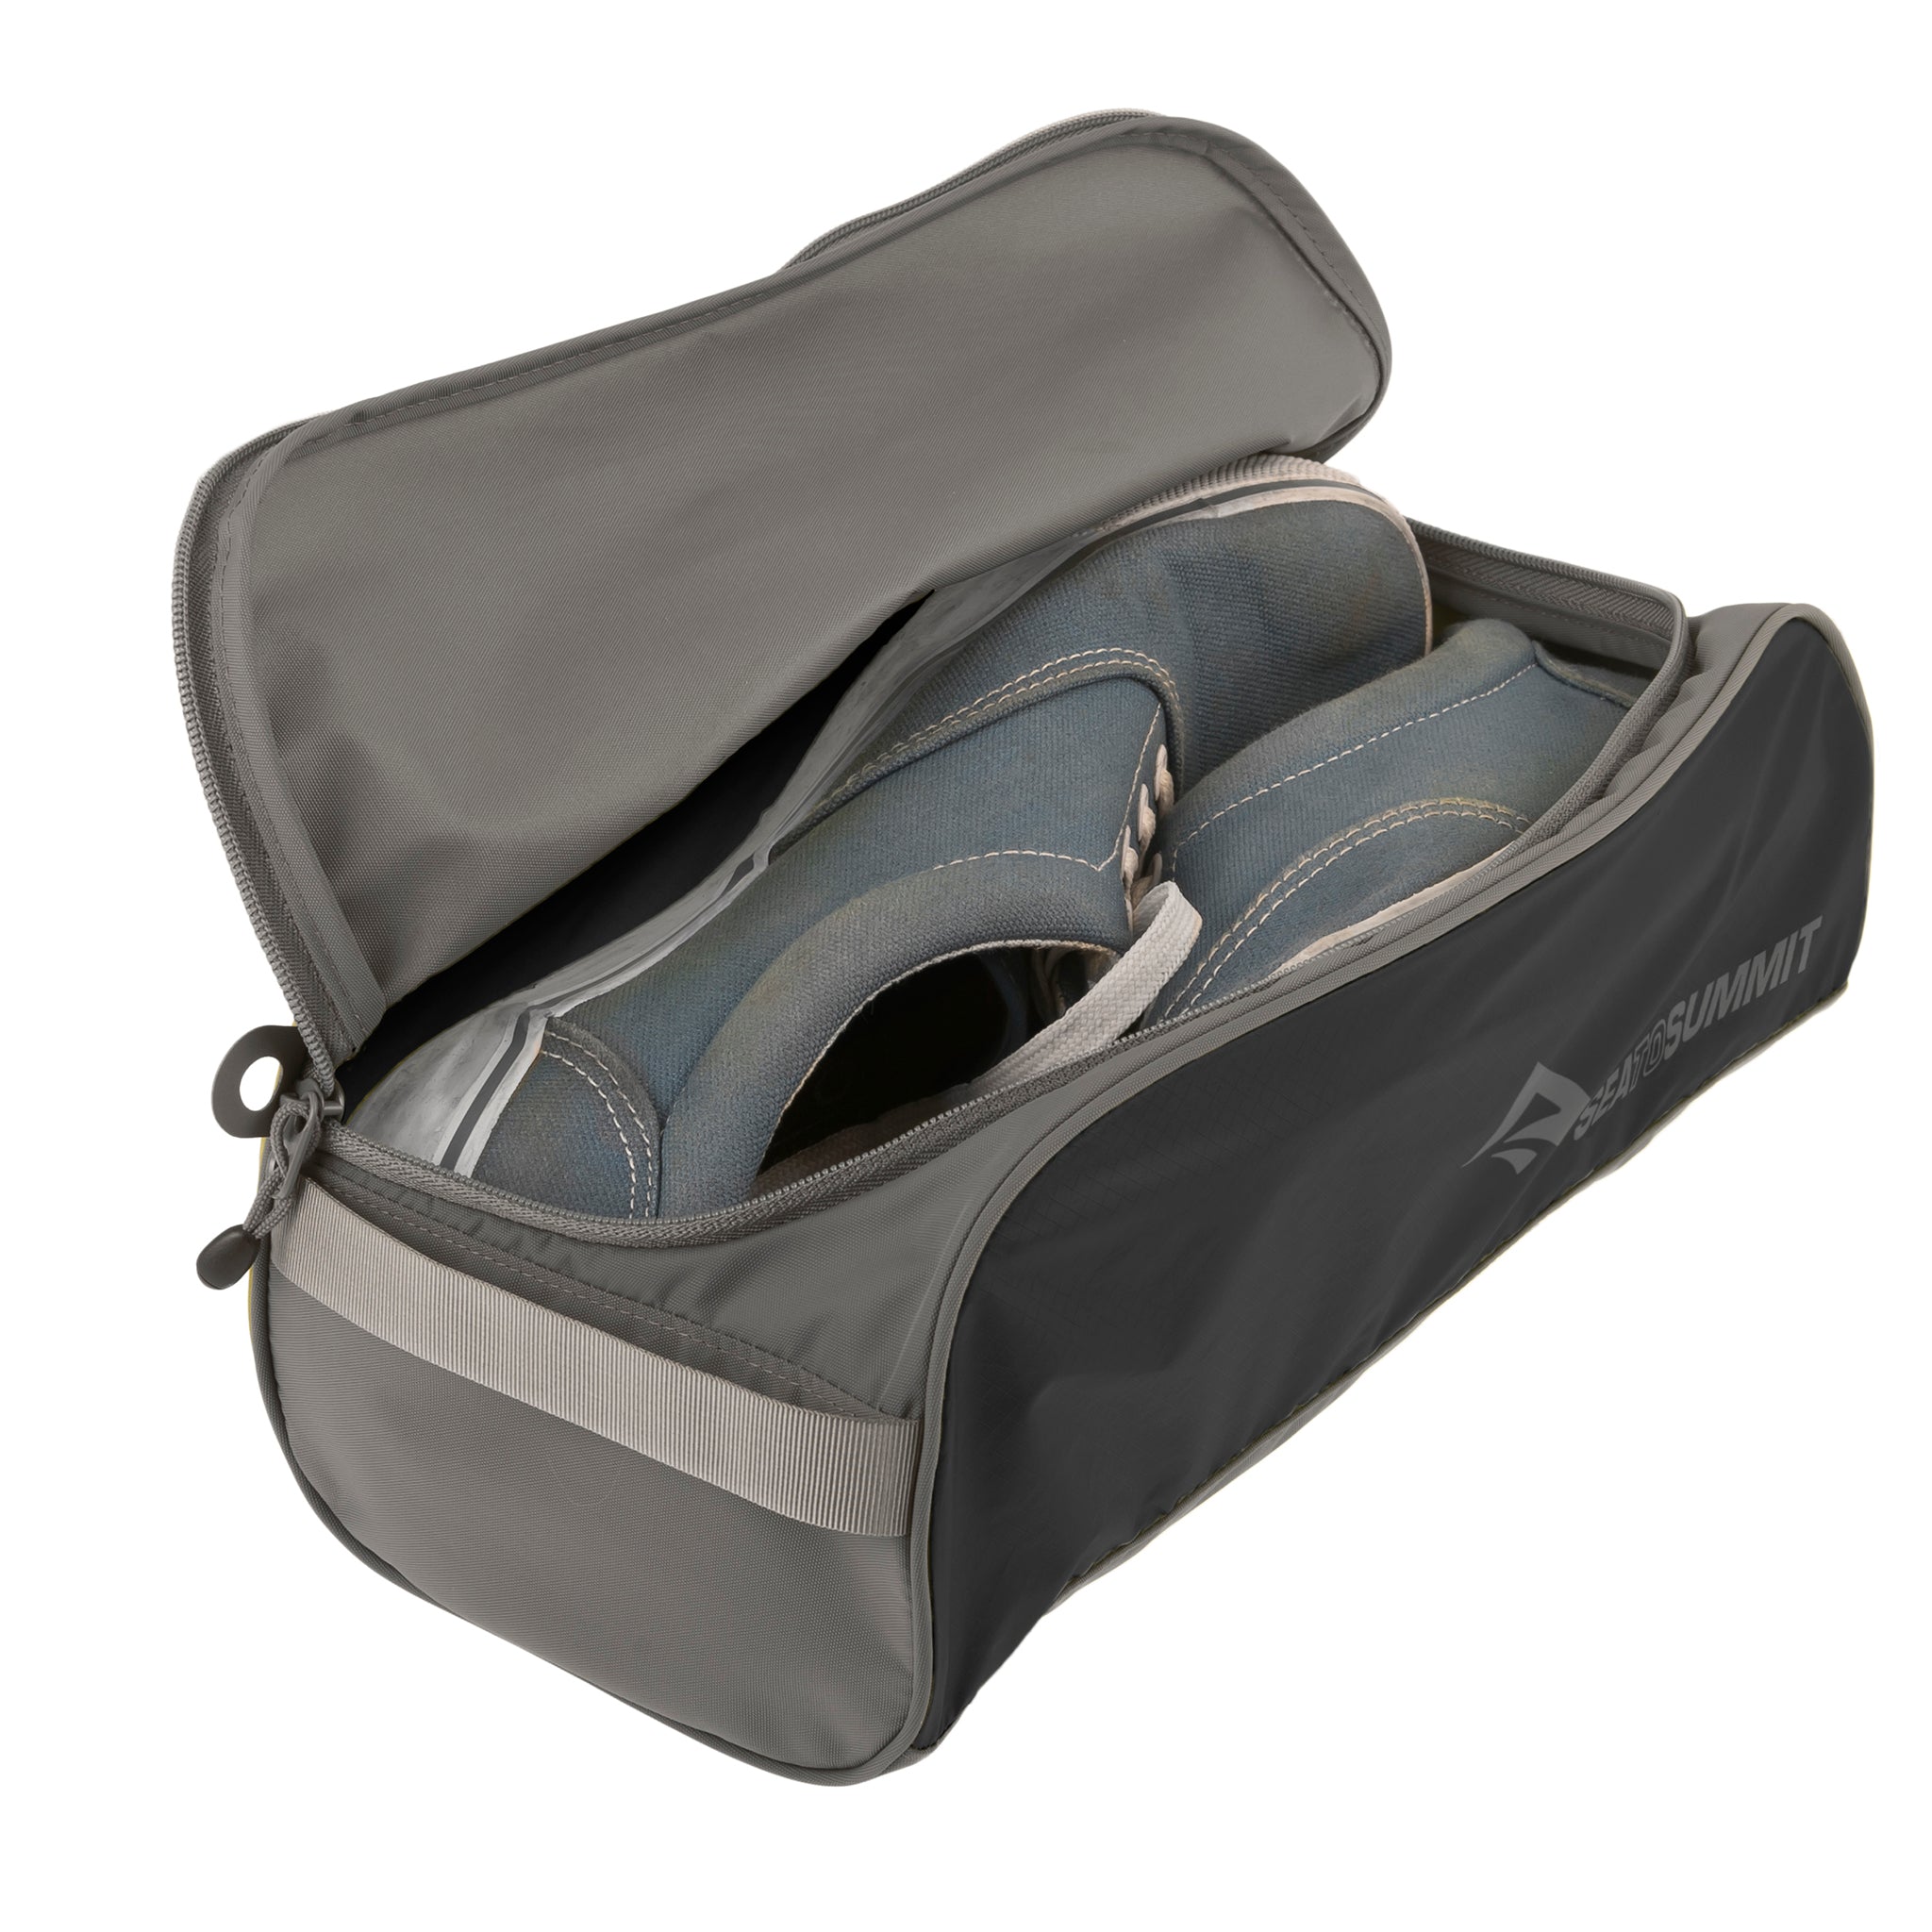 Portable Travel Shoe Bags Shoe Organizer Space Saving Storage Bags 2L*2XL 